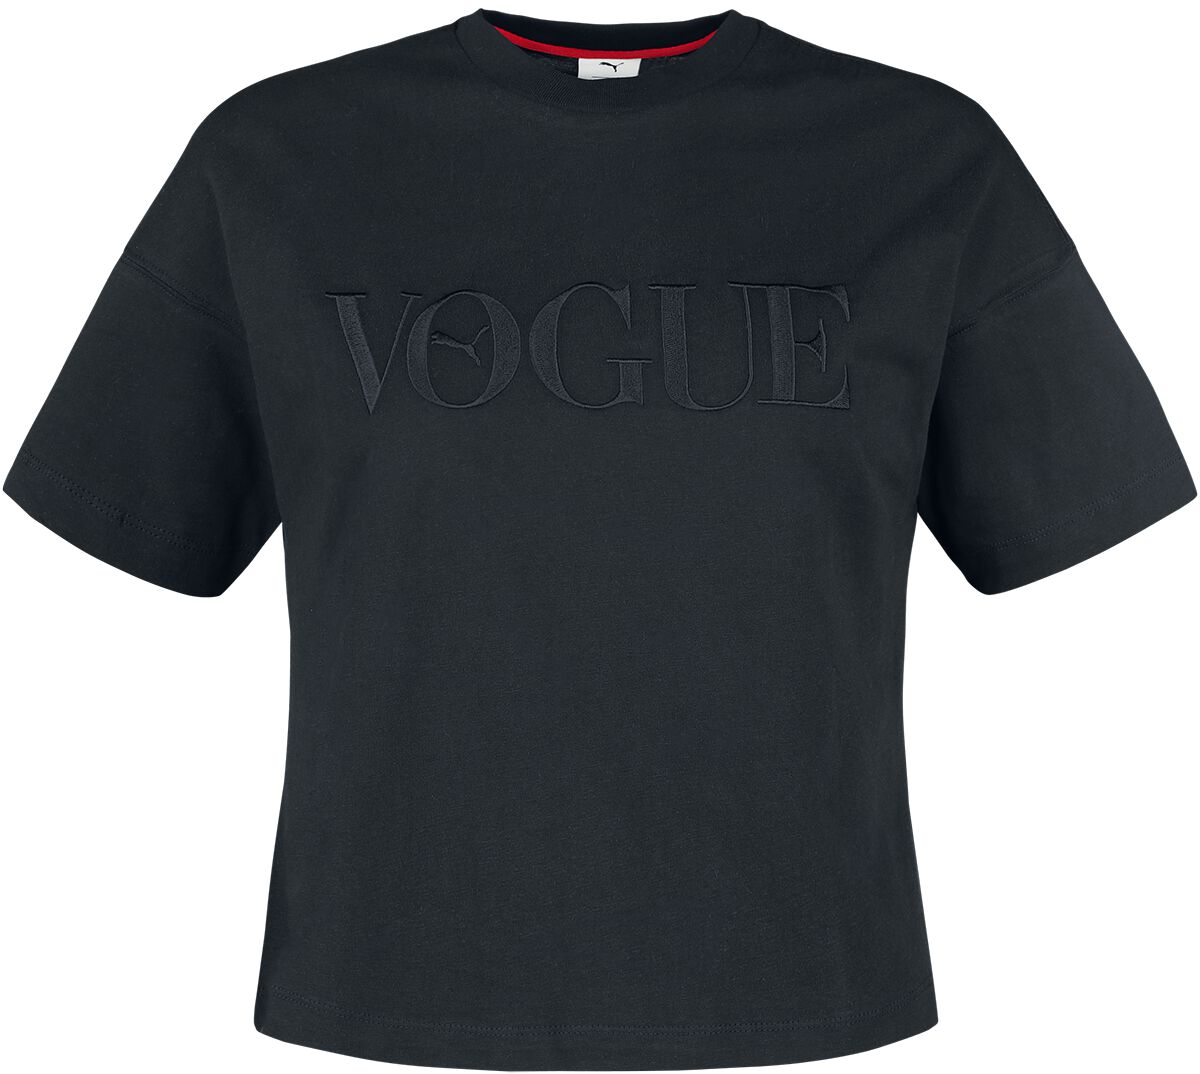 T-Shirt Manches courtes de Puma - PUMA x VOGUE Graphic Tee - XS à XL - pour Femme - noir